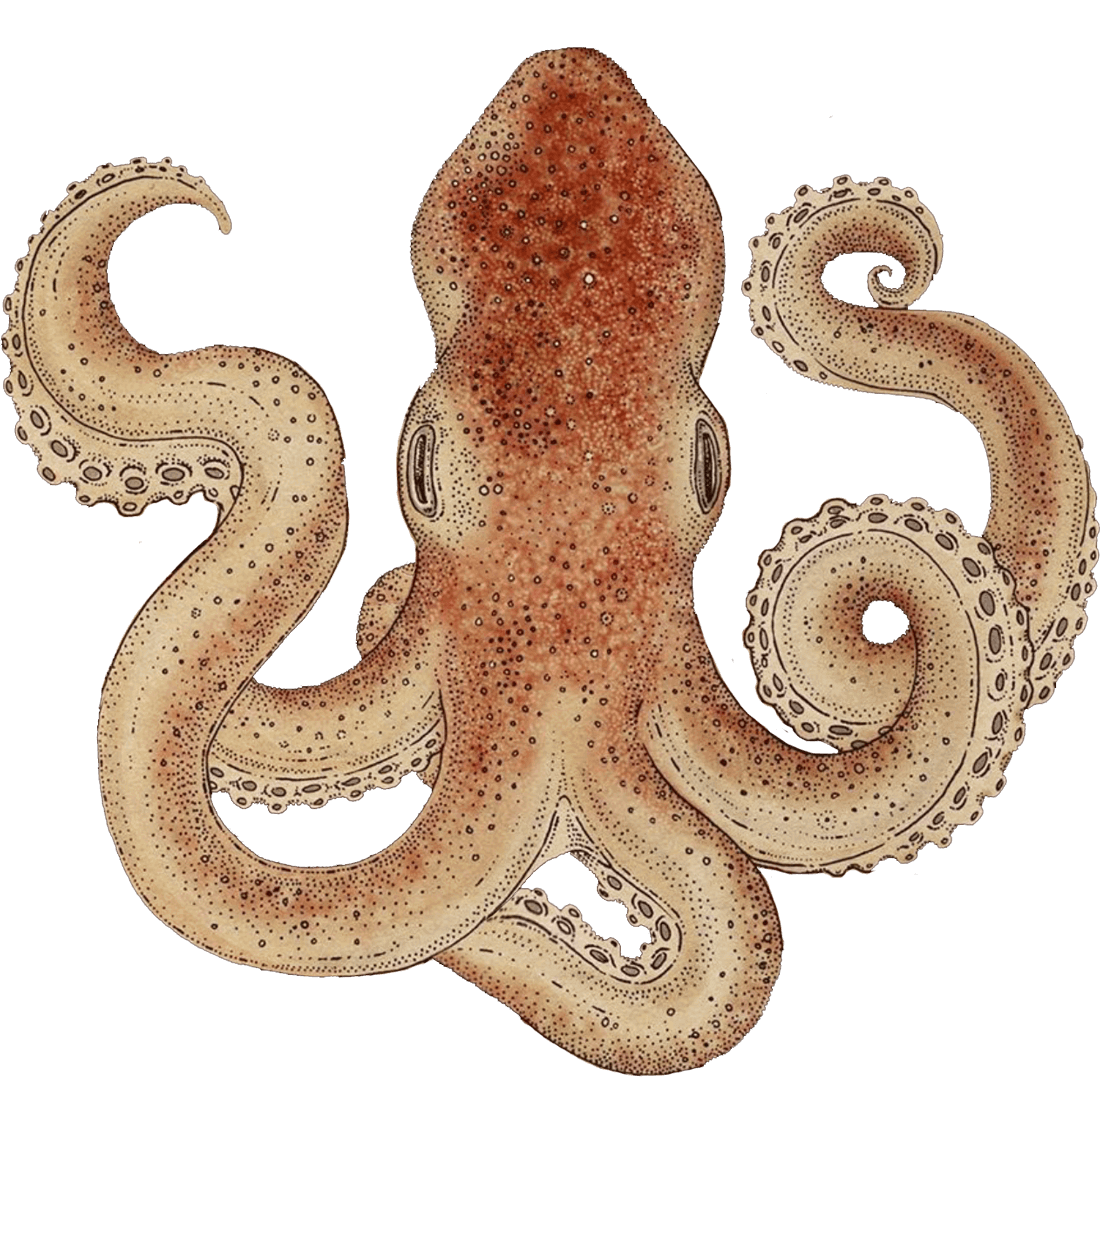 octopus tentacle five